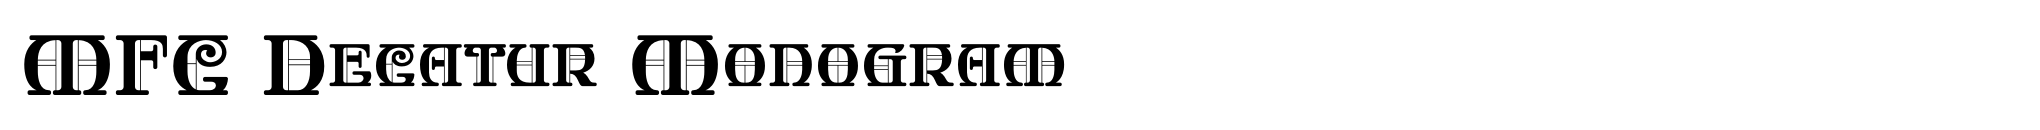 MFC Decatur Monogram image